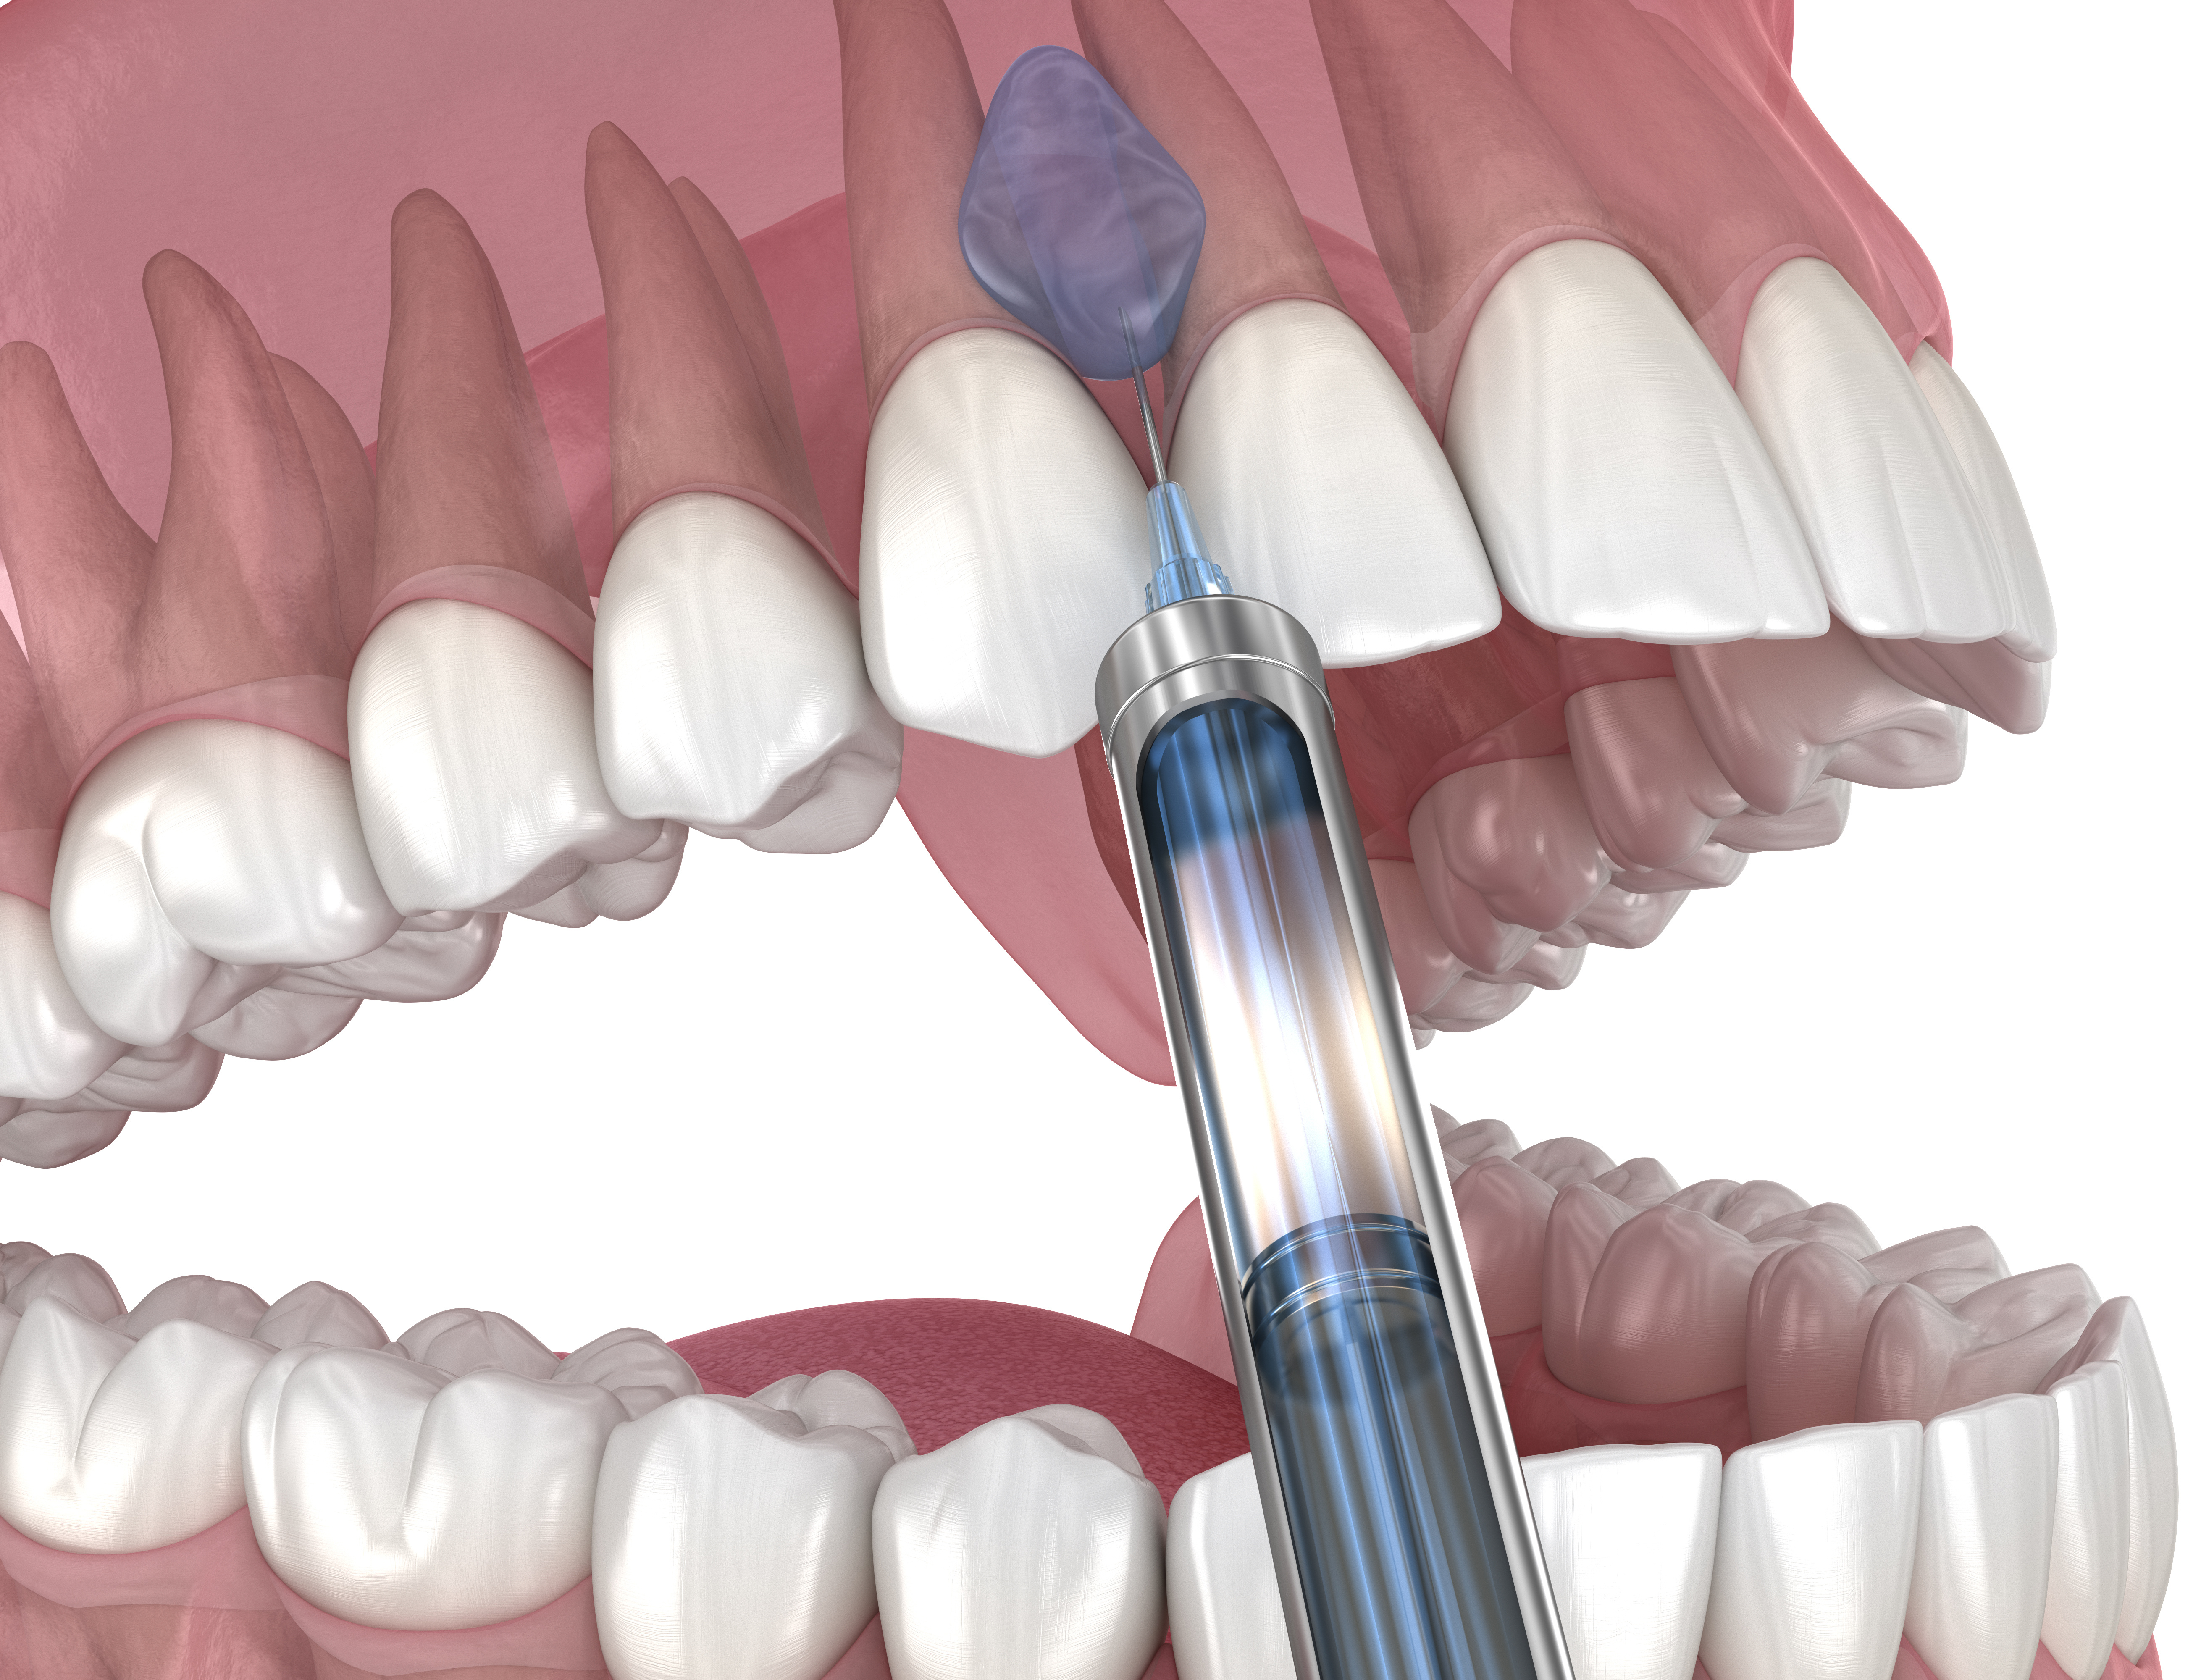 dental needle injecting anesthetic into maxillary